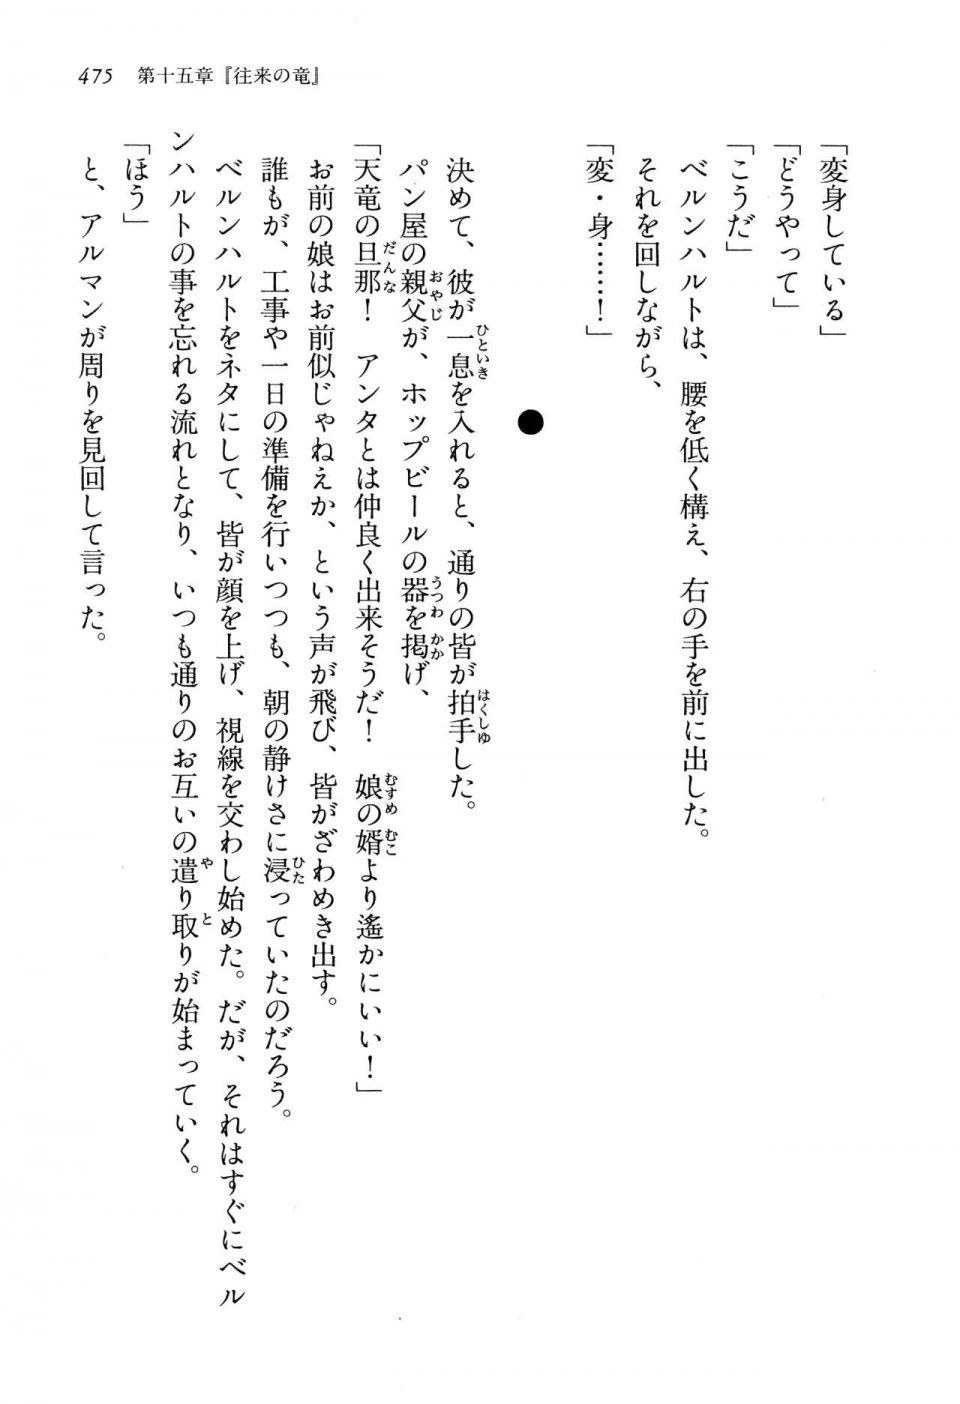 Kyoukai Senjou no Horizon LN Vol 13(6A) - Photo #475